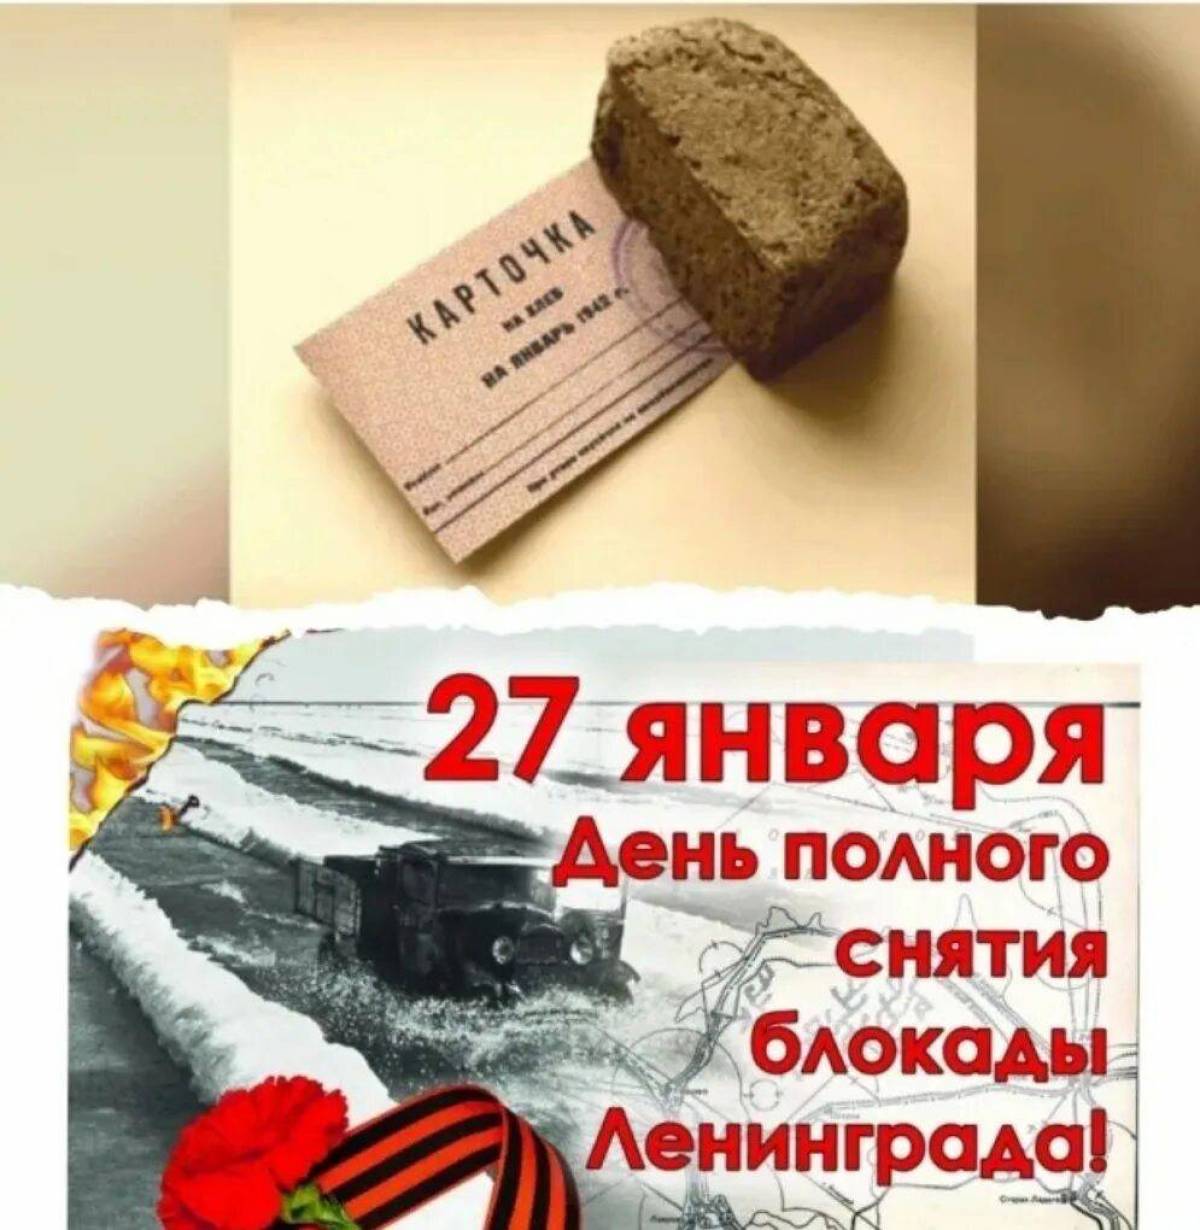 27 Января день снятия блокады Ленинграда от фашистской